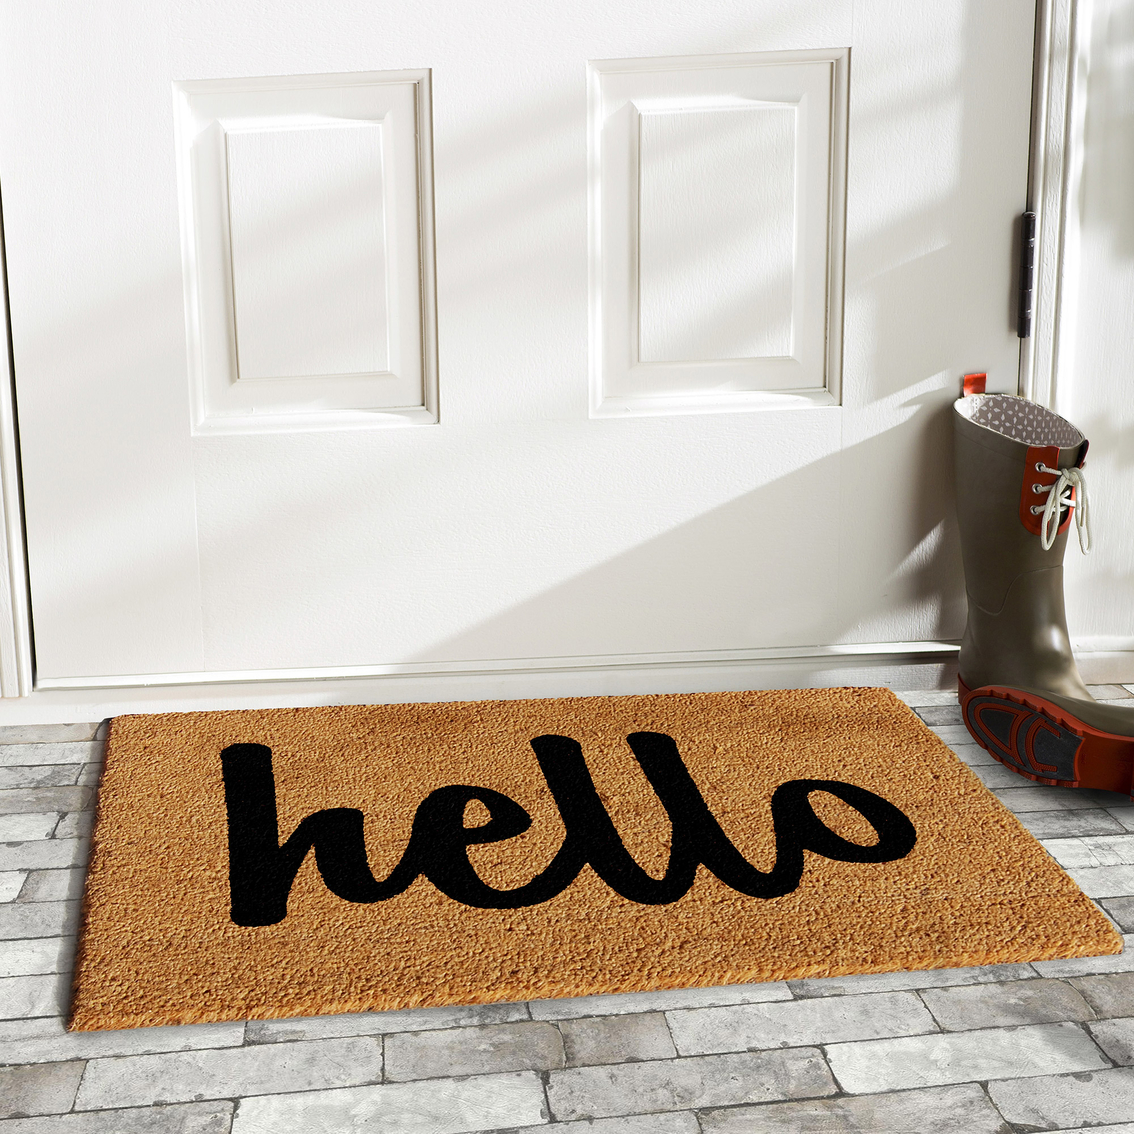 Callowaymills Hello Script Doormat - Image 3 of 4